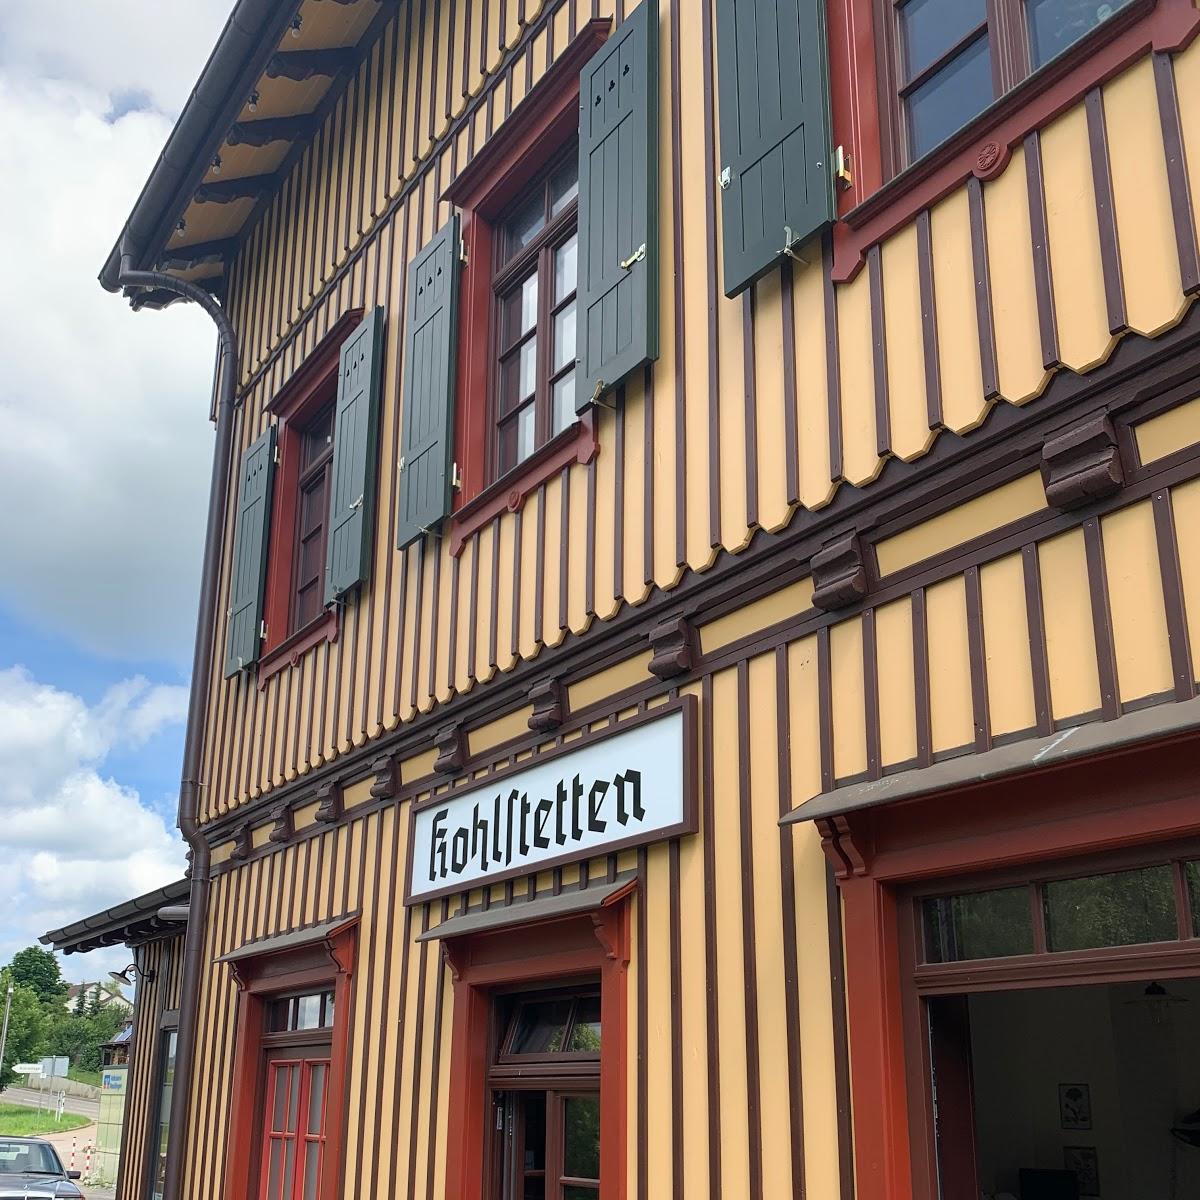 Restaurant "Landmetzgerei Högner" in  Hayingen